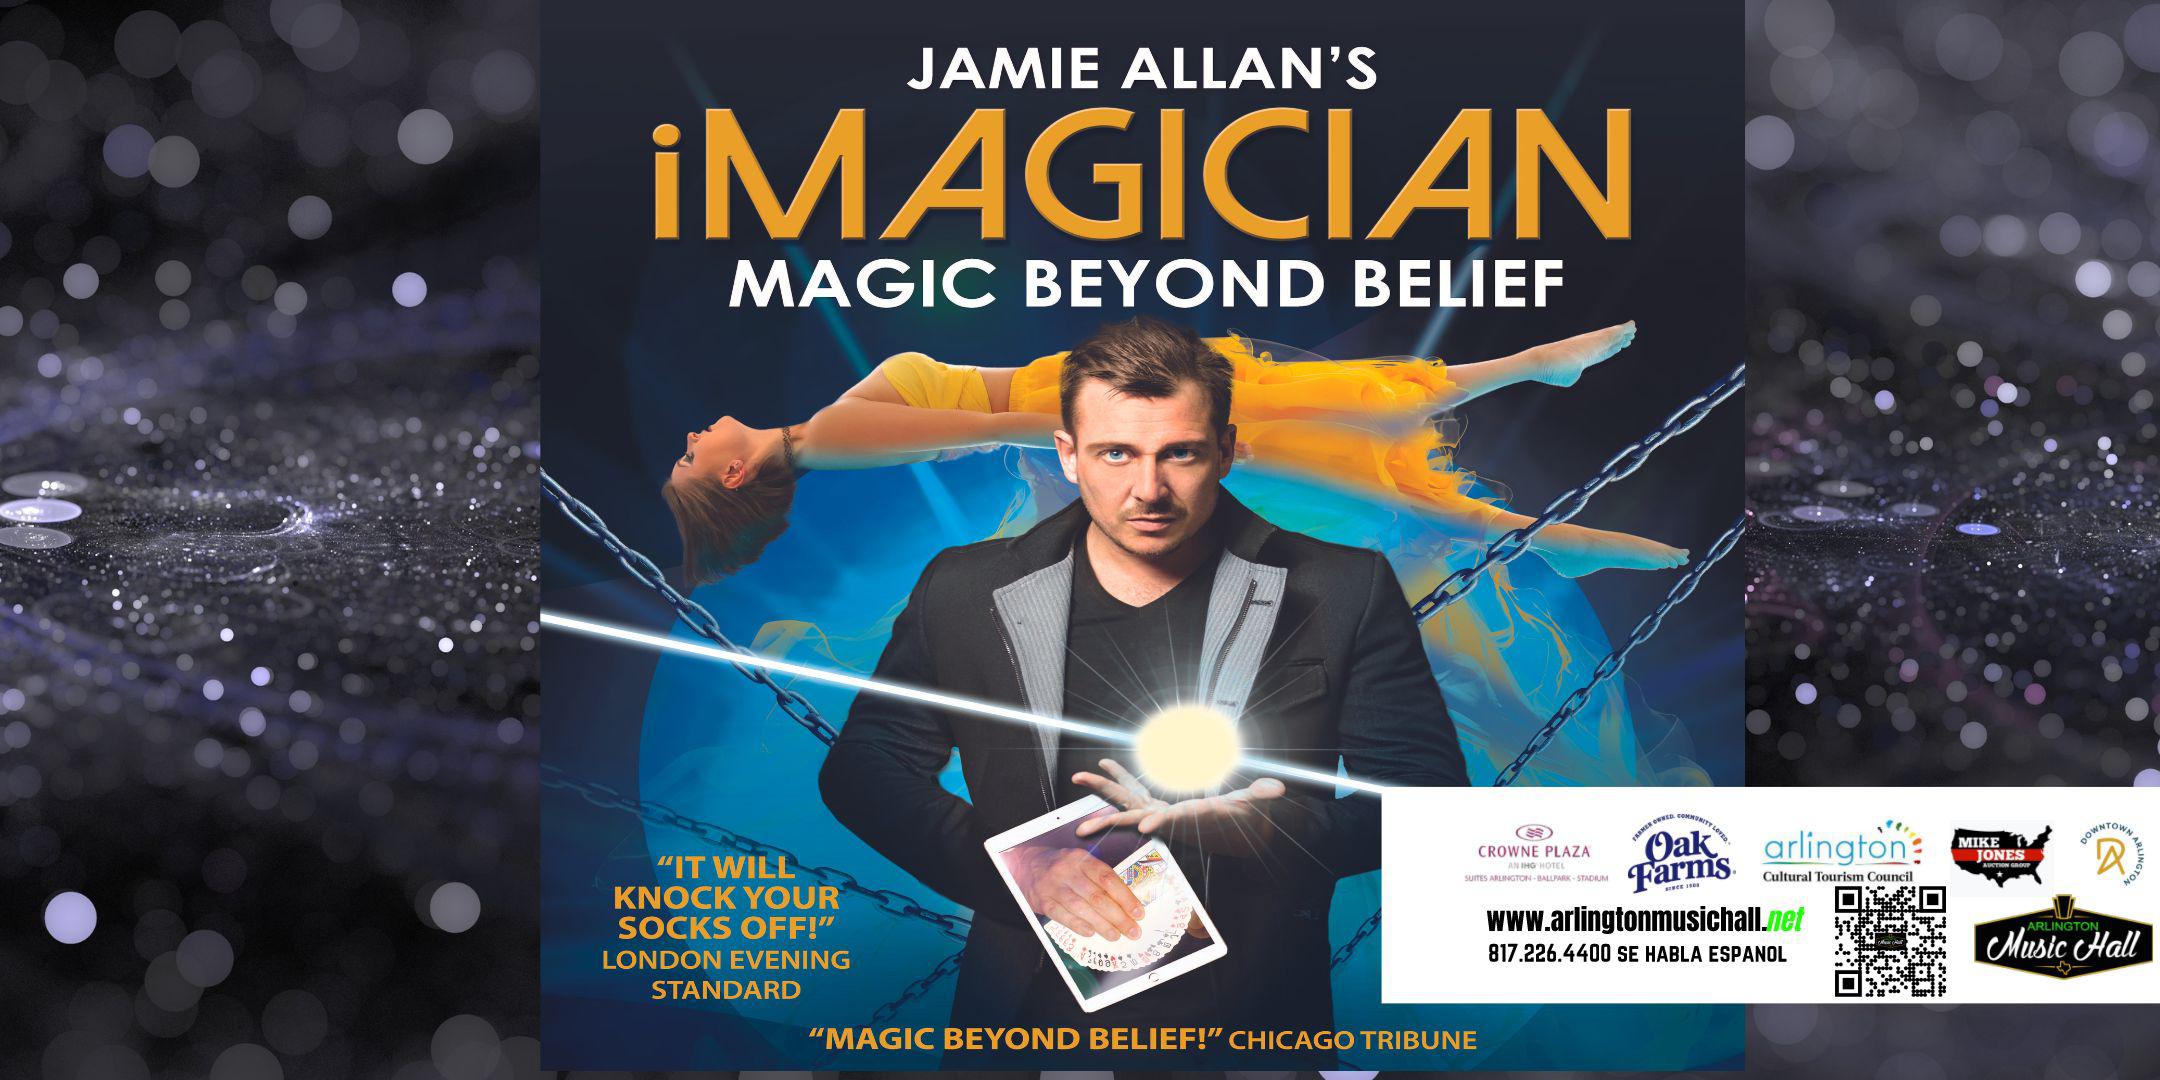 Jamie Allan’s iMagician MAGIC BEYOND BELIEF!